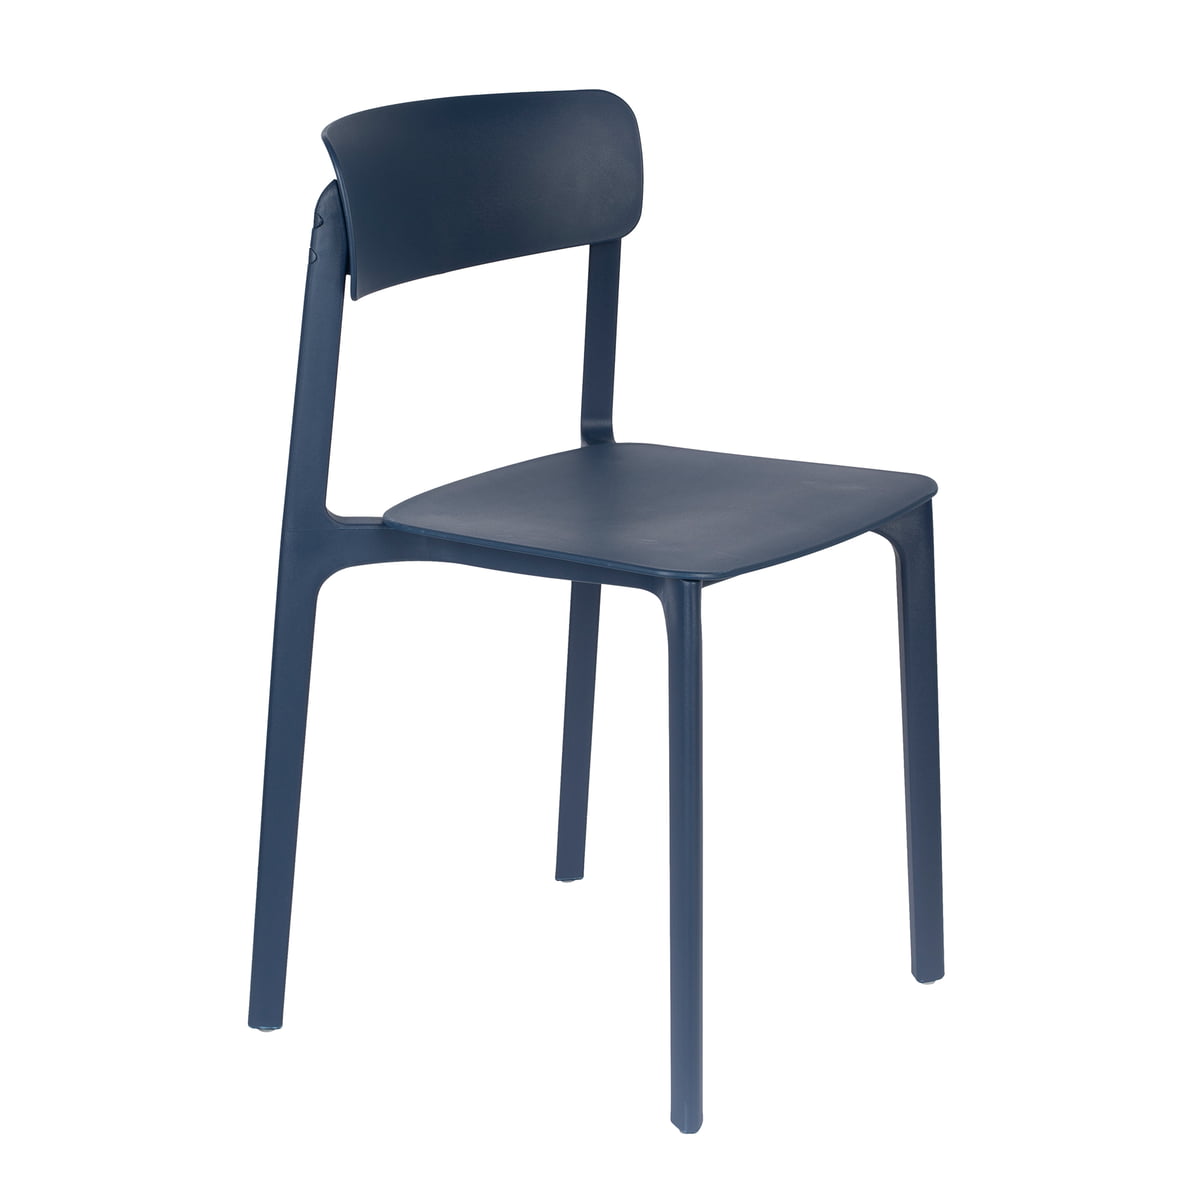 livingstone - james chaise, bleu foncé